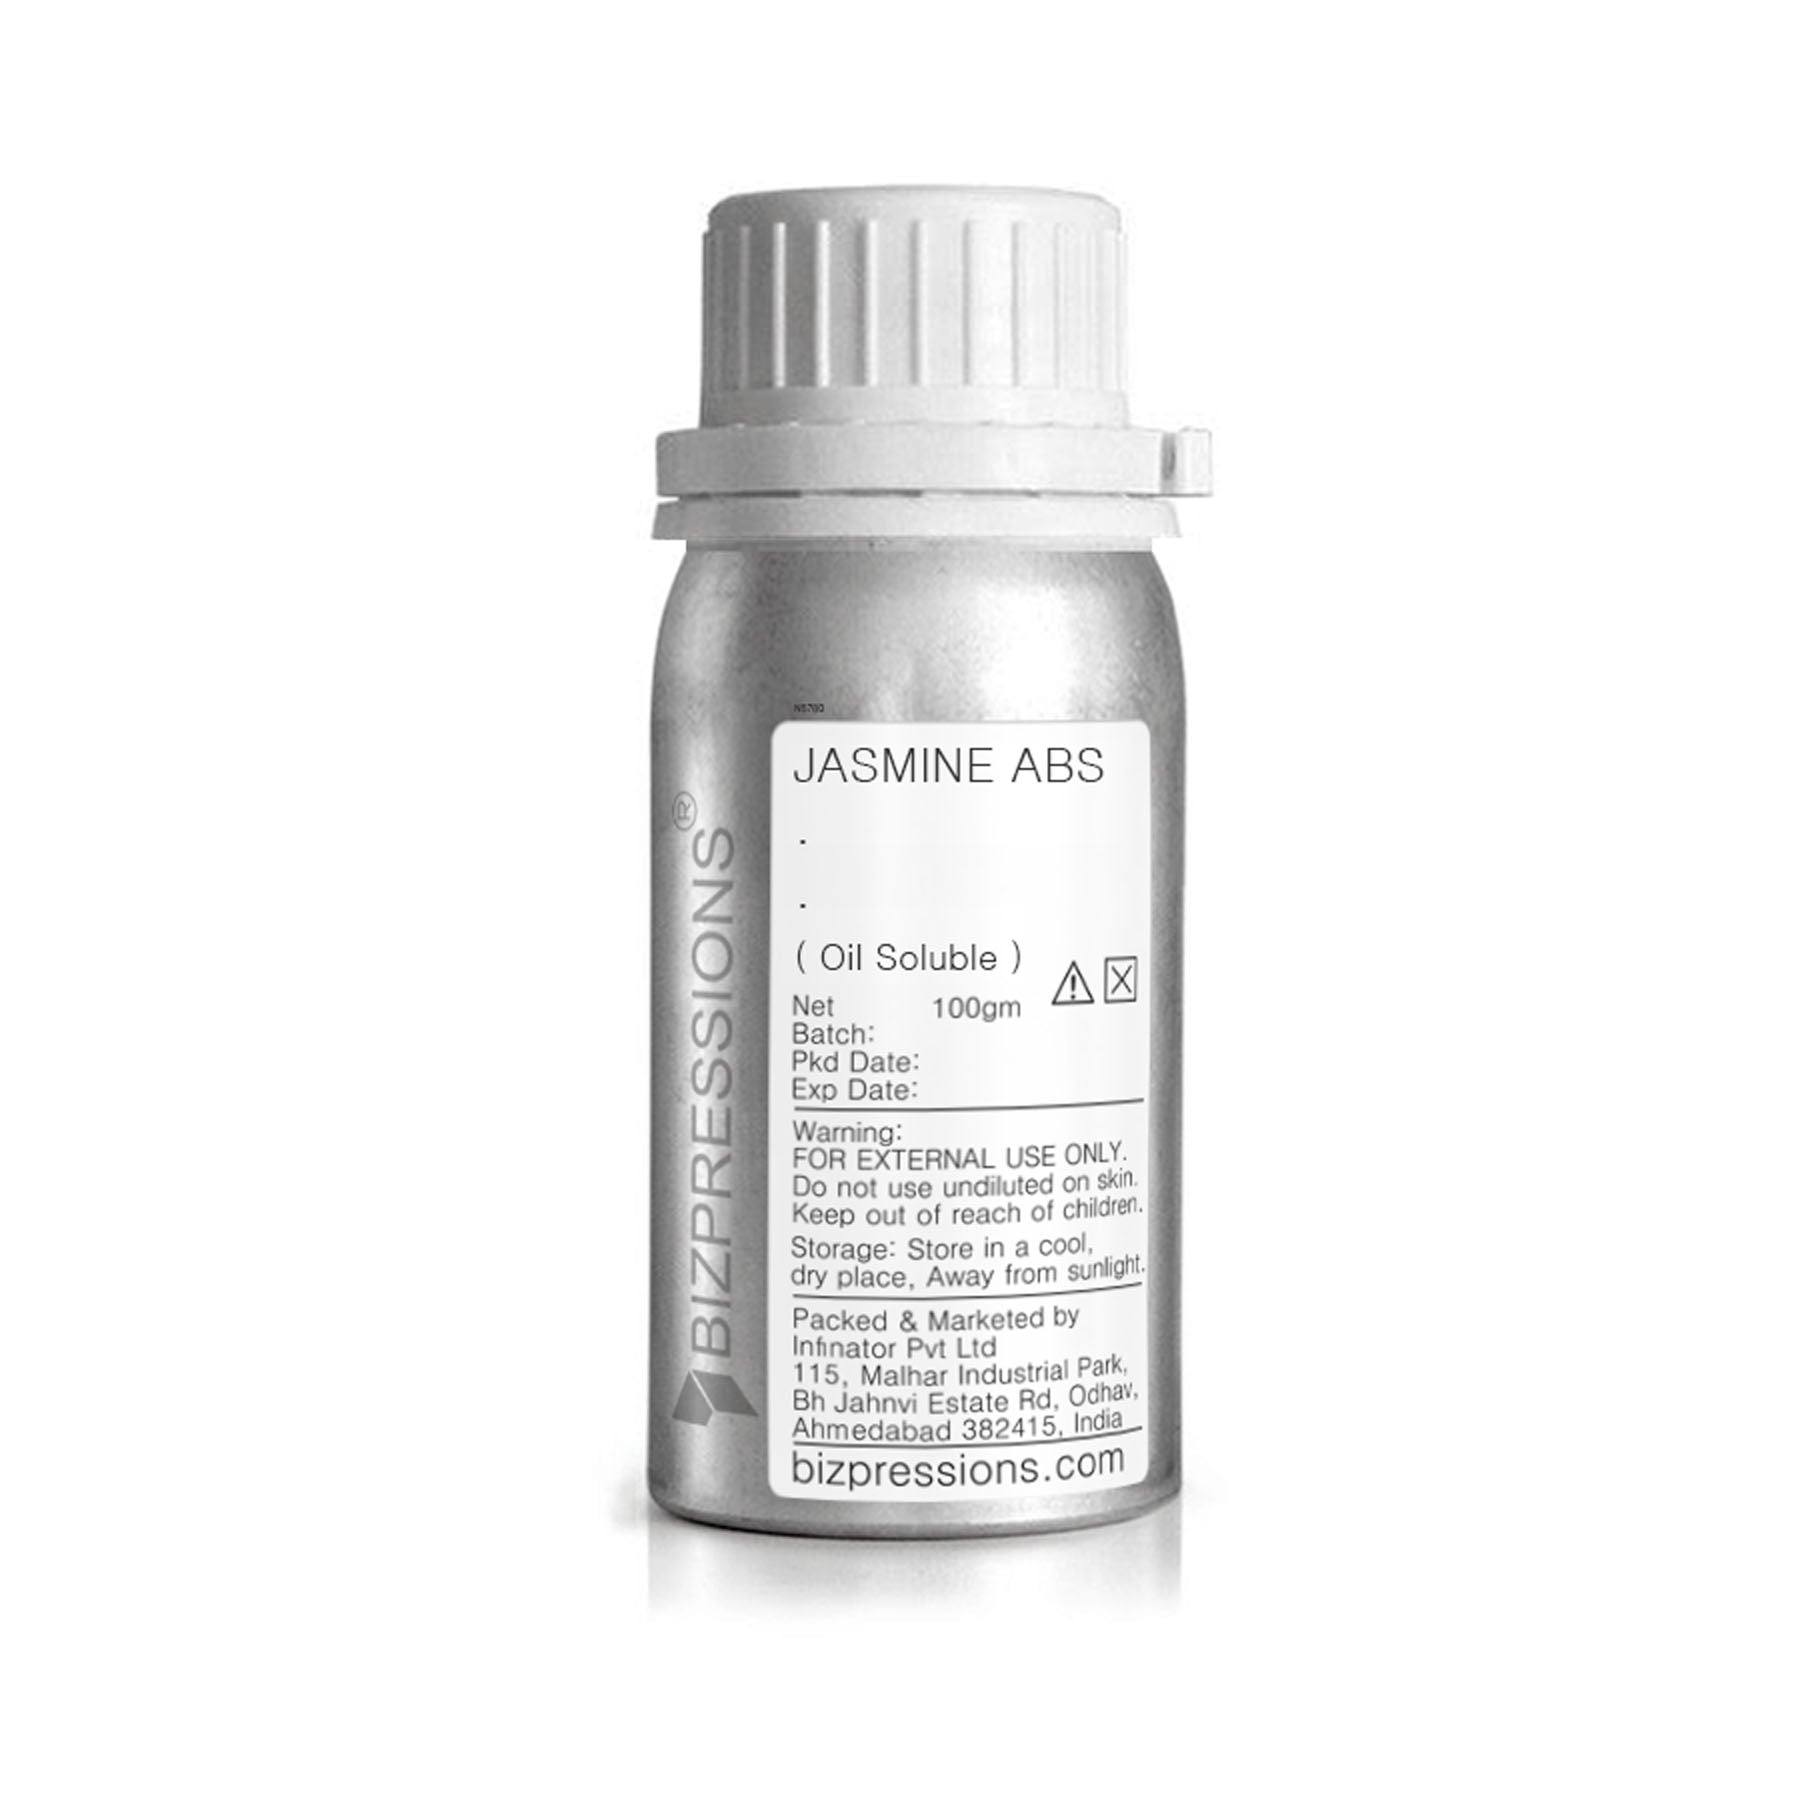 JASMINE ABS - Fragrance ( Oil Soluble ) - 100 gm